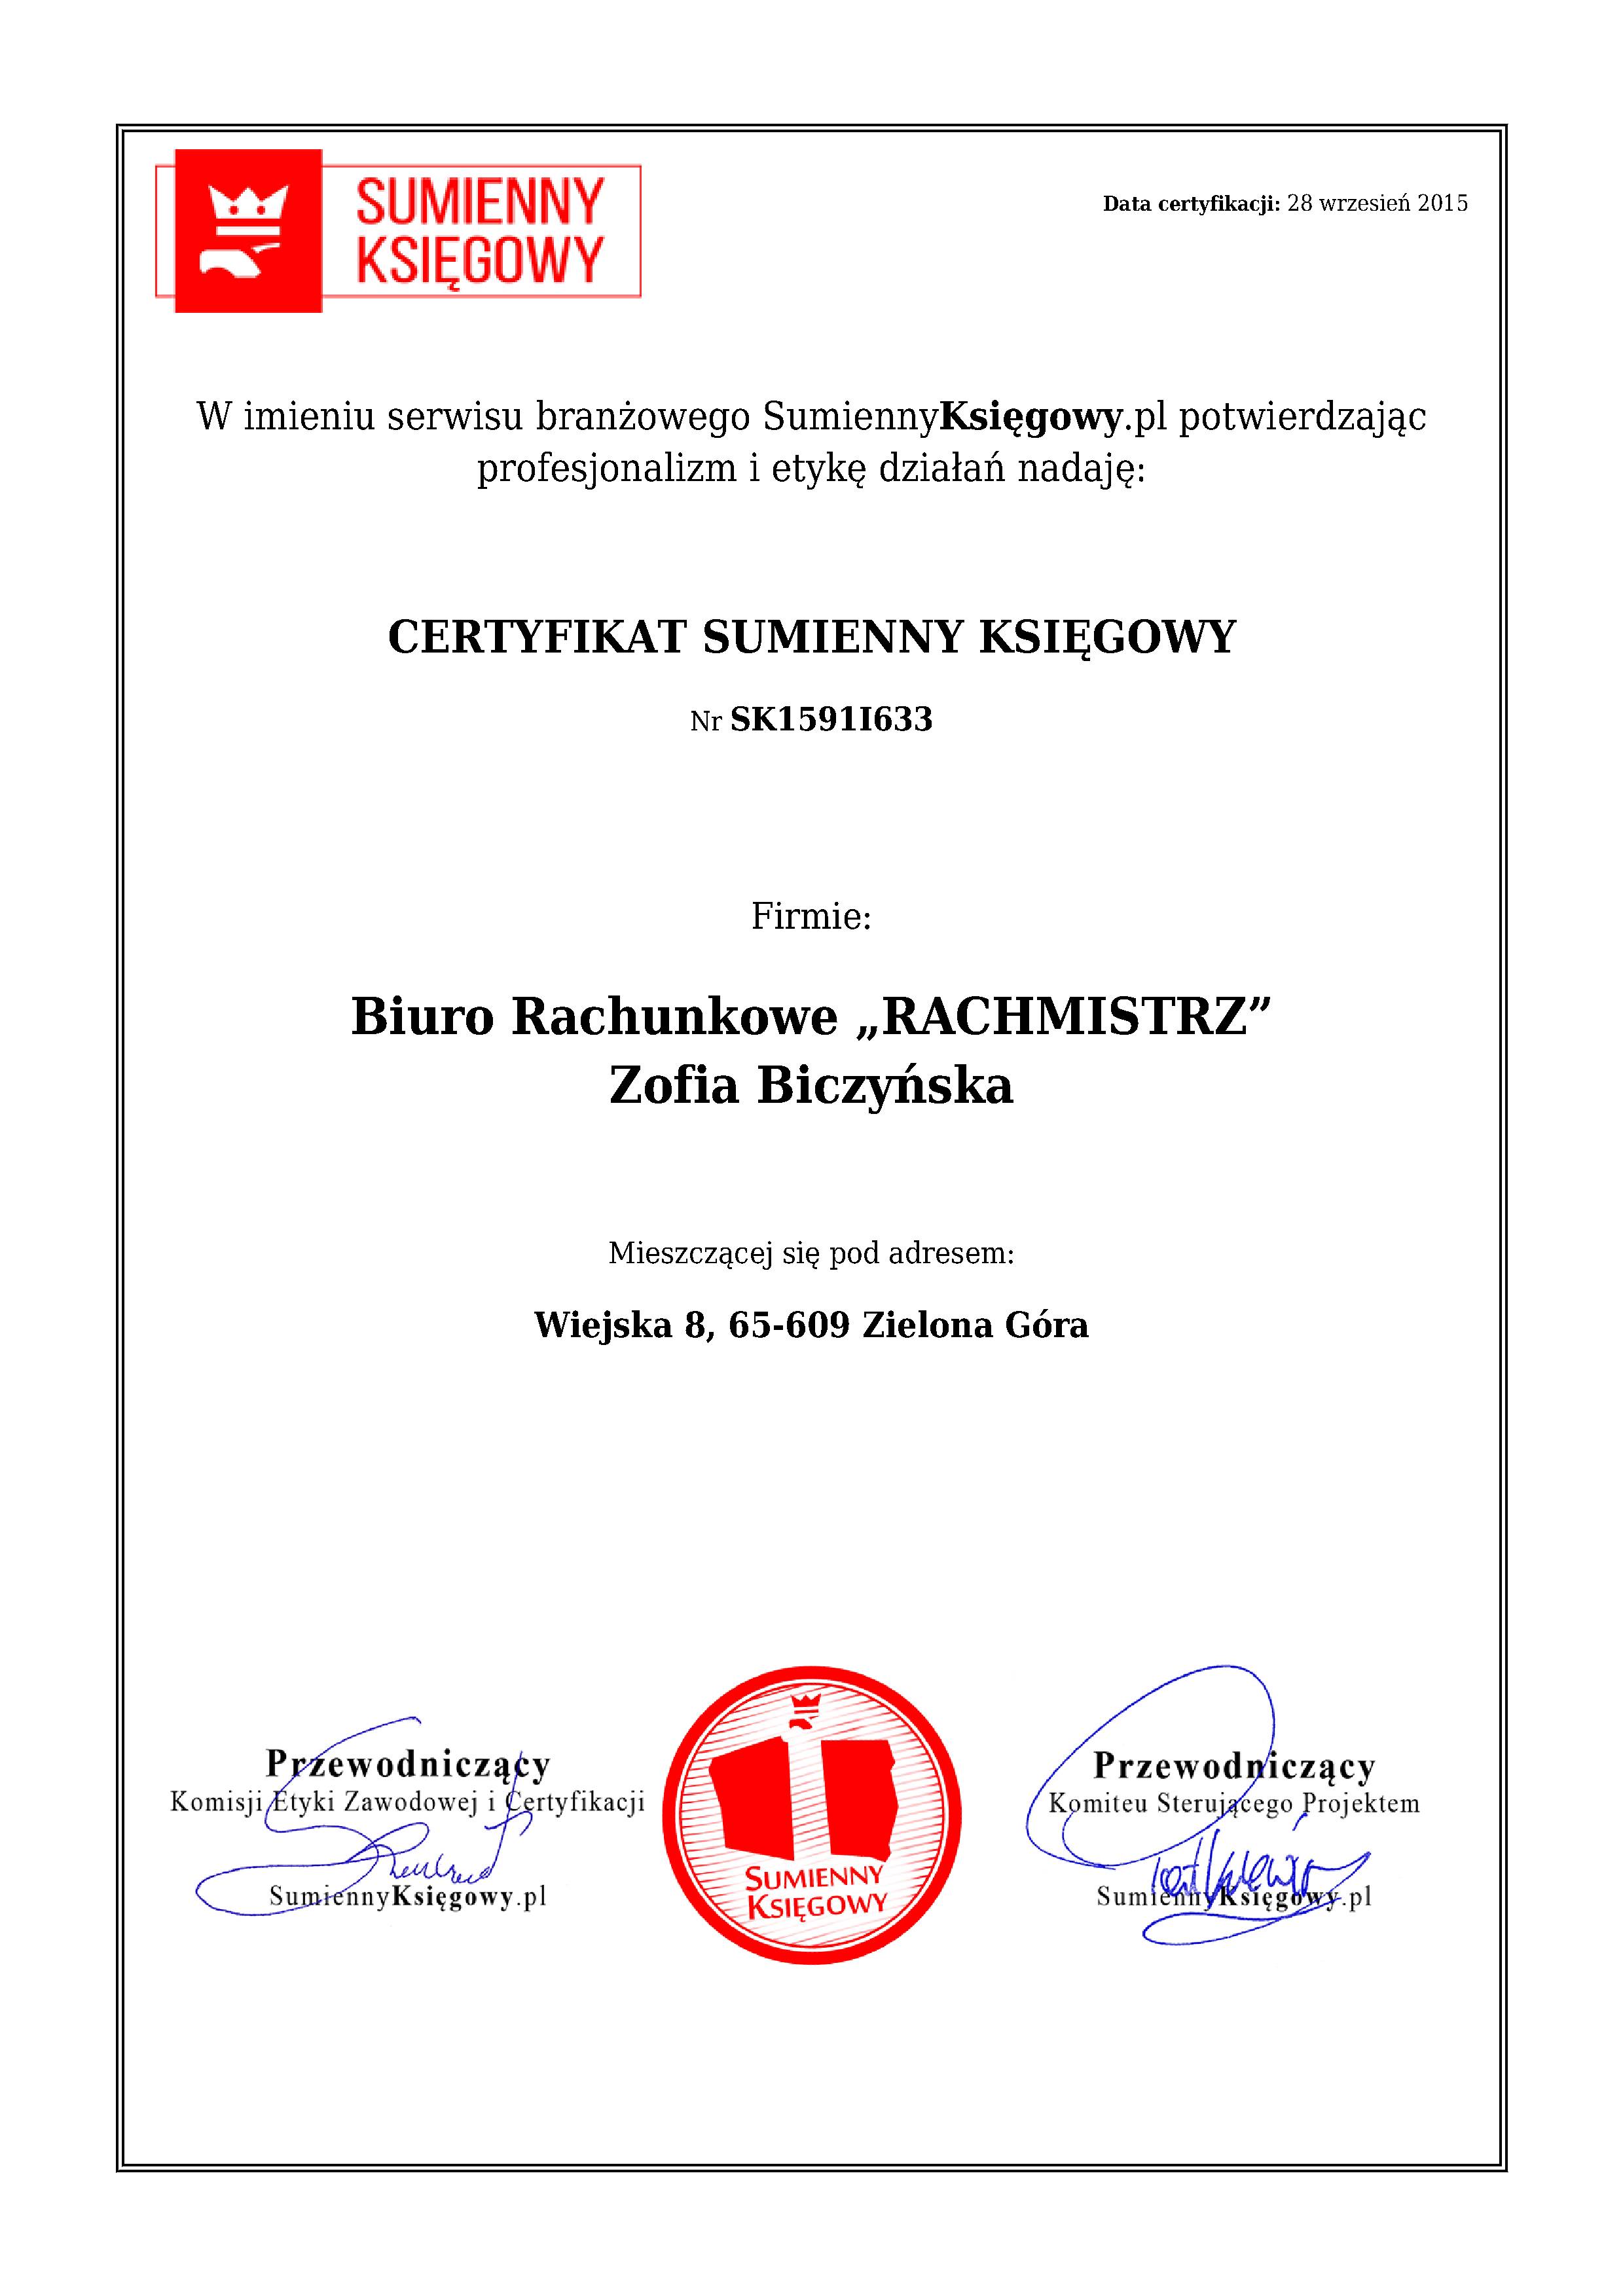 Biuro Rachunkowe „RACHMISTRZ” Zofia Biczyńska certyfikat 1